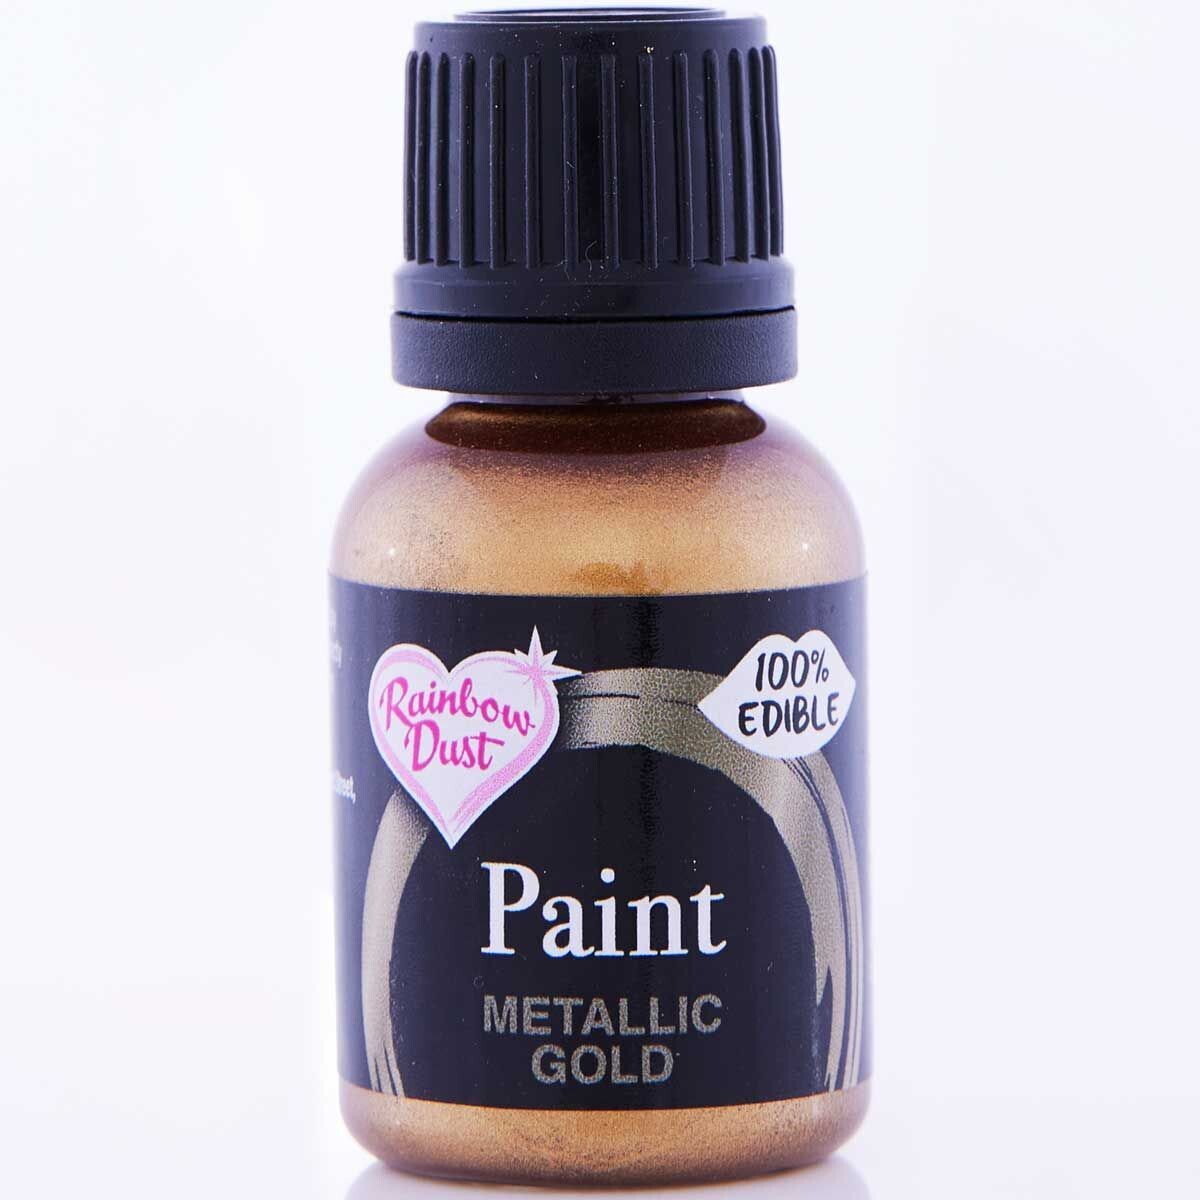 Rainbow Dust Metallic Paint -GOLD 24g - Μεταλλικό Βρώσιμο χρώμα ζωγραφικής Χρυσό